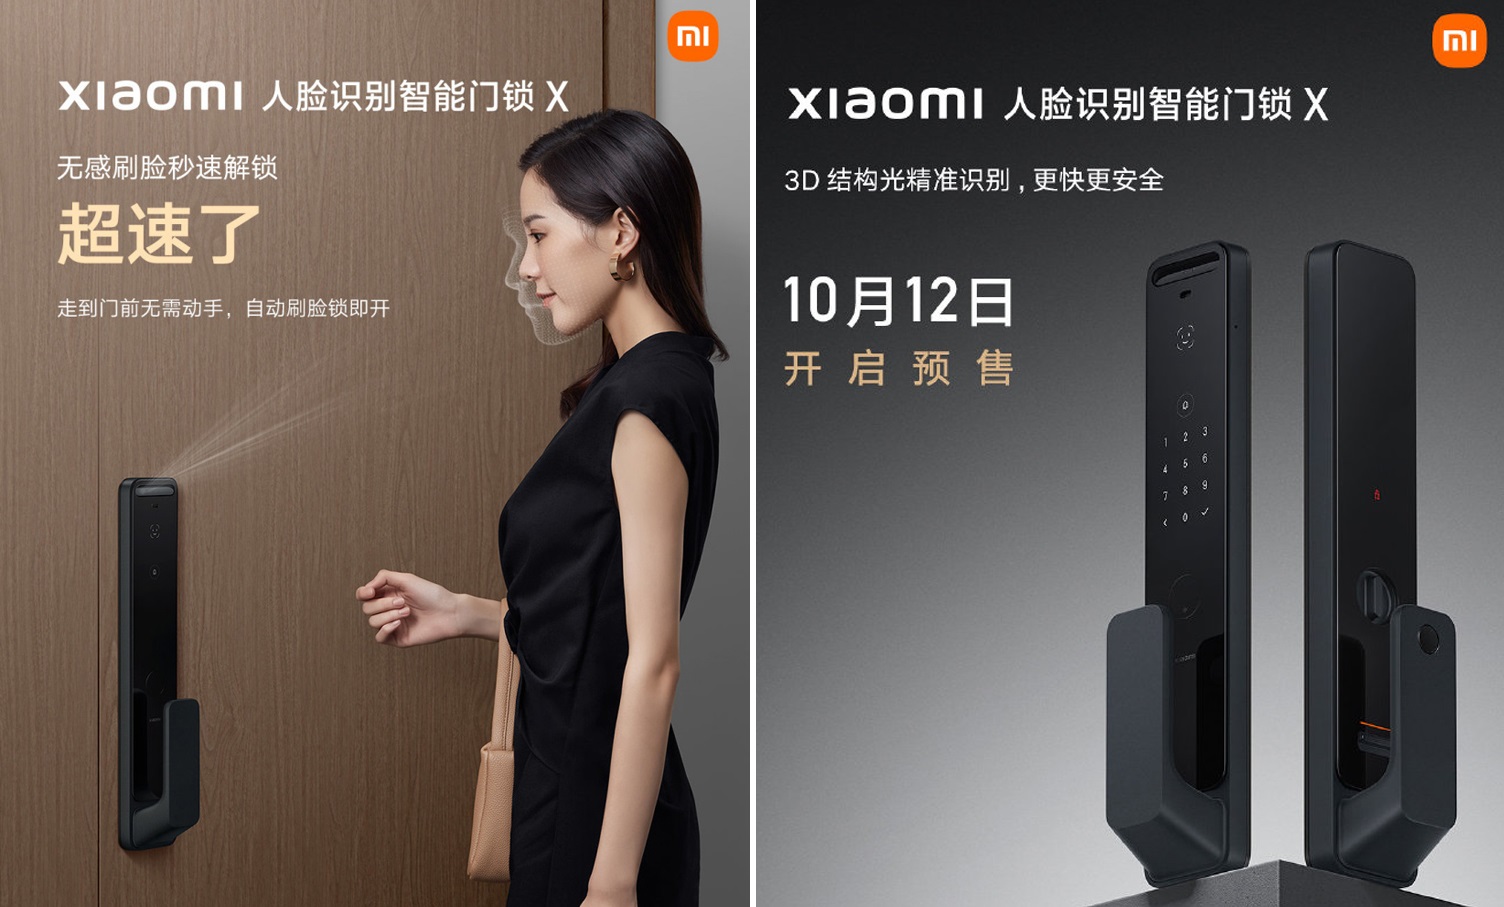 Xiaomi dévoile un verrou de porte avec NFC, écran AMOLED et reconnaissance faciale 3D